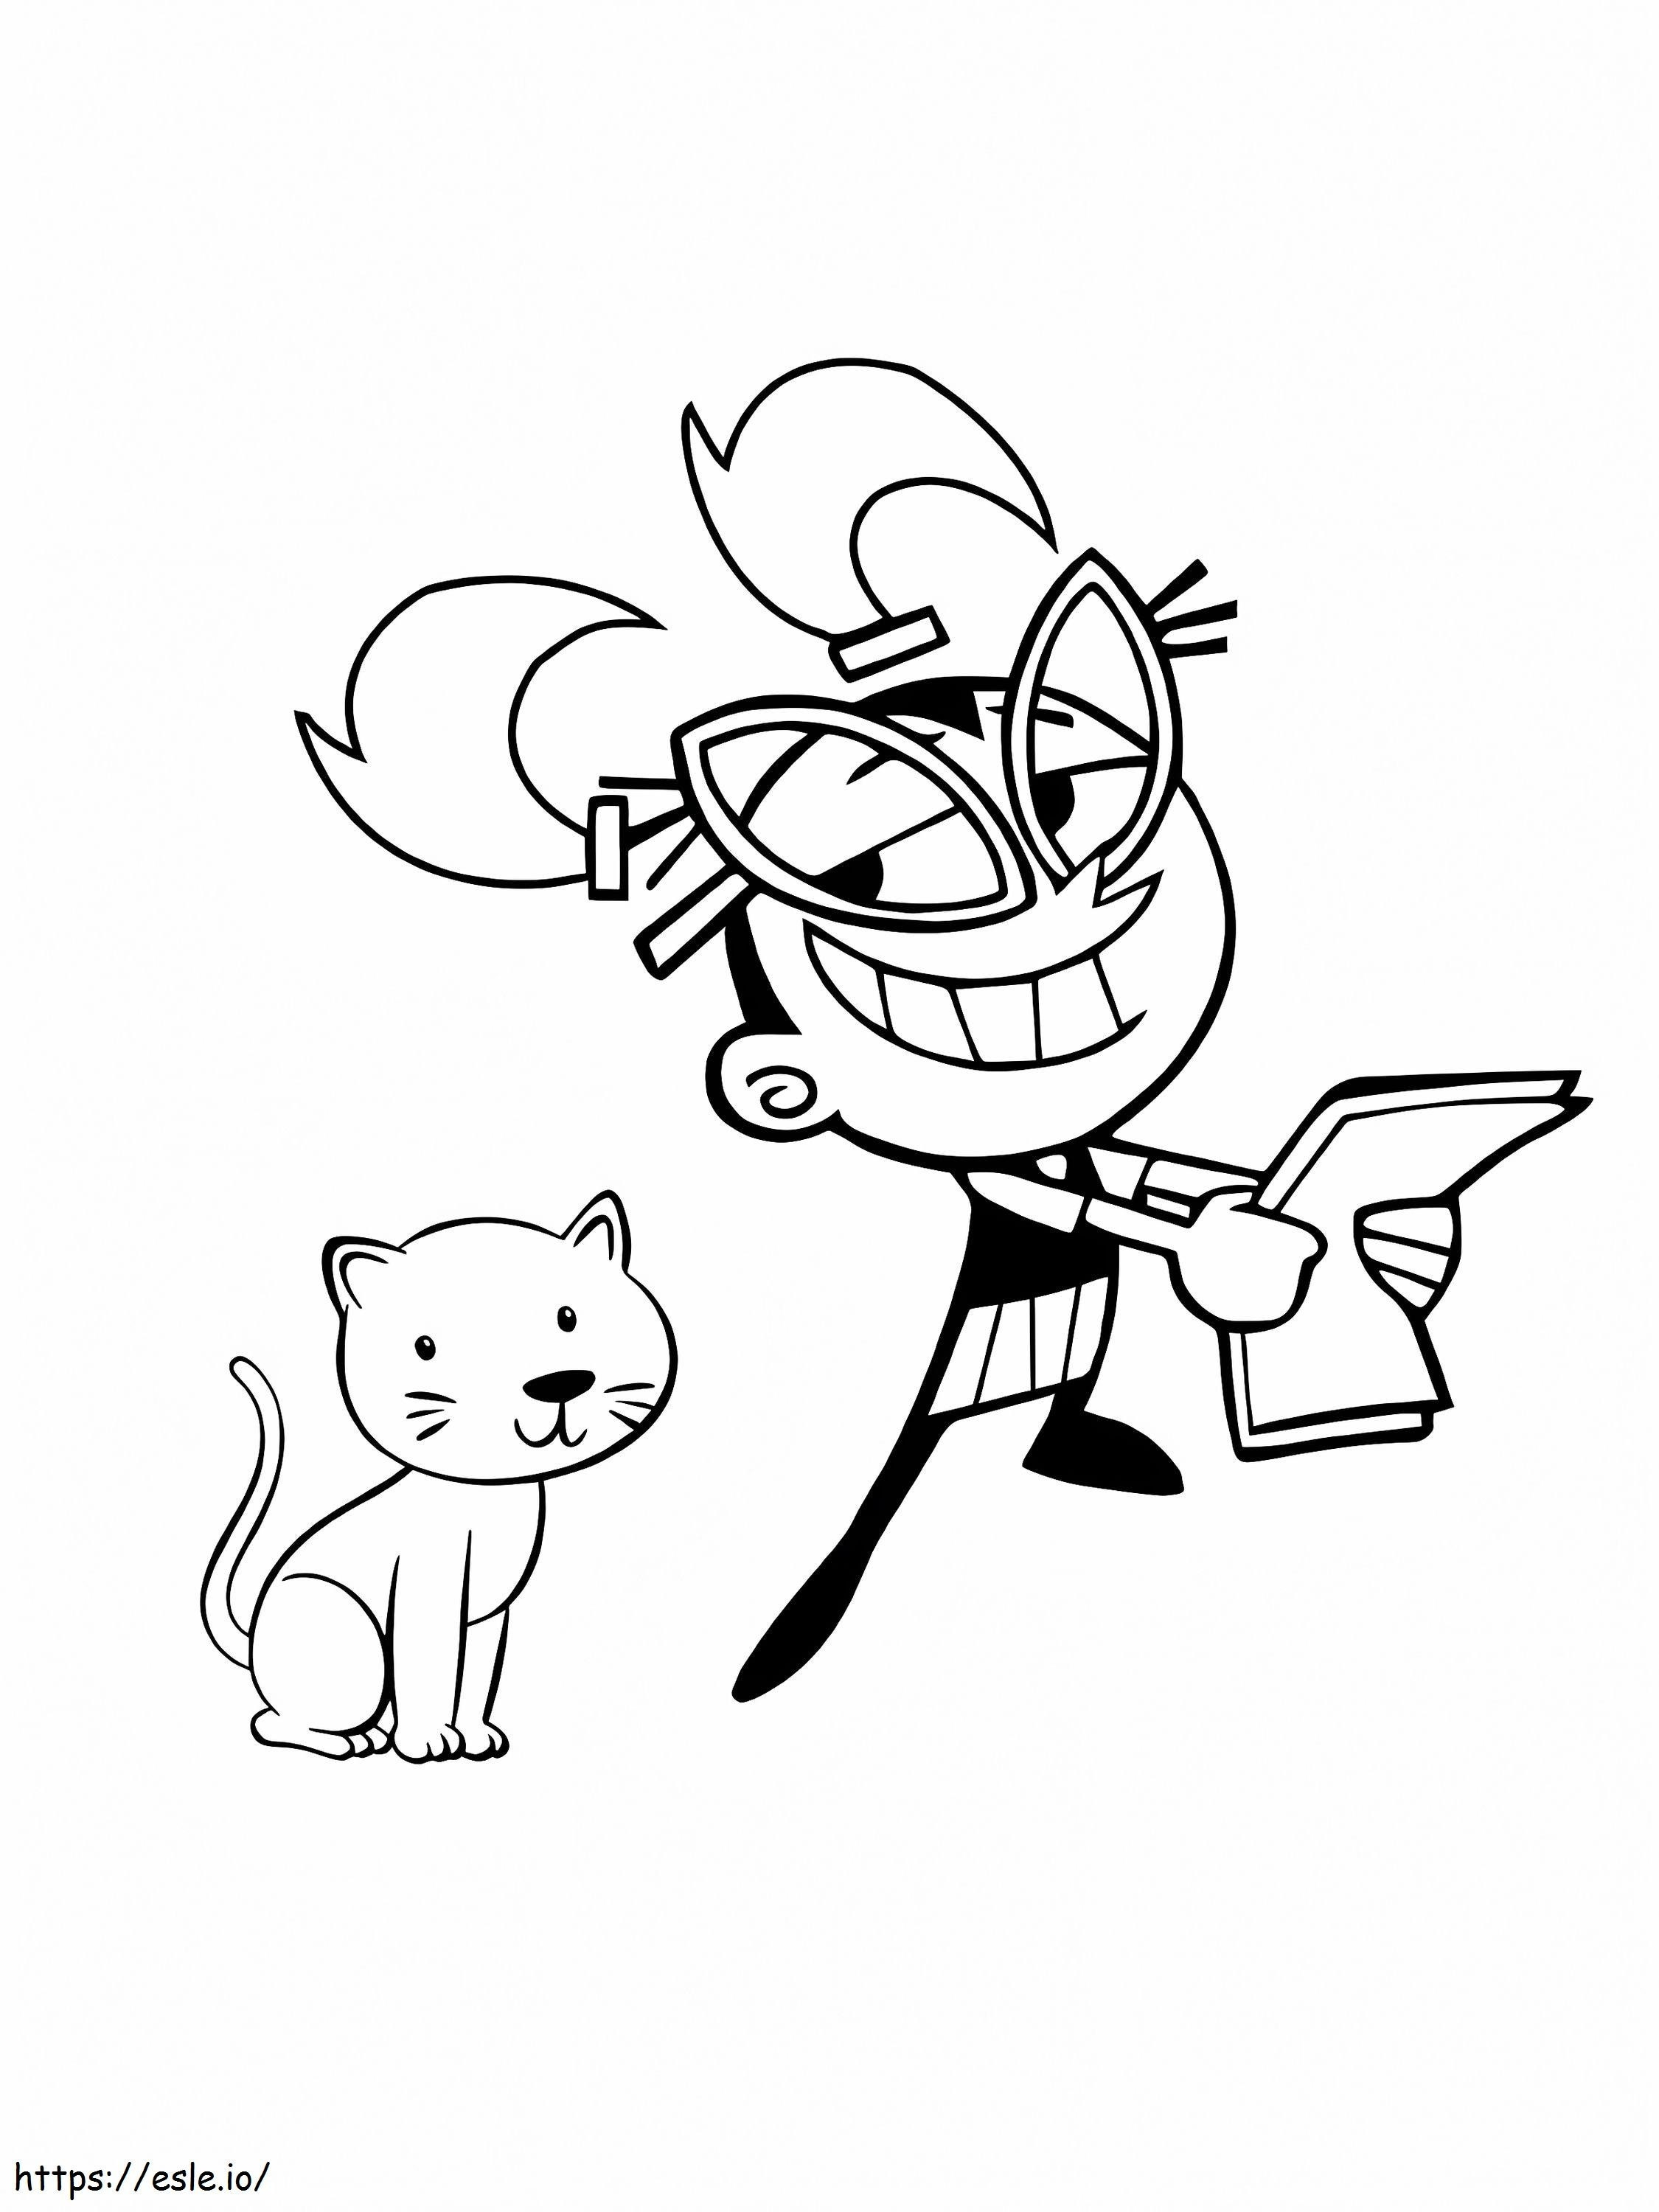 Os Padrinhos Mágicos Tootie e Gato para colorir